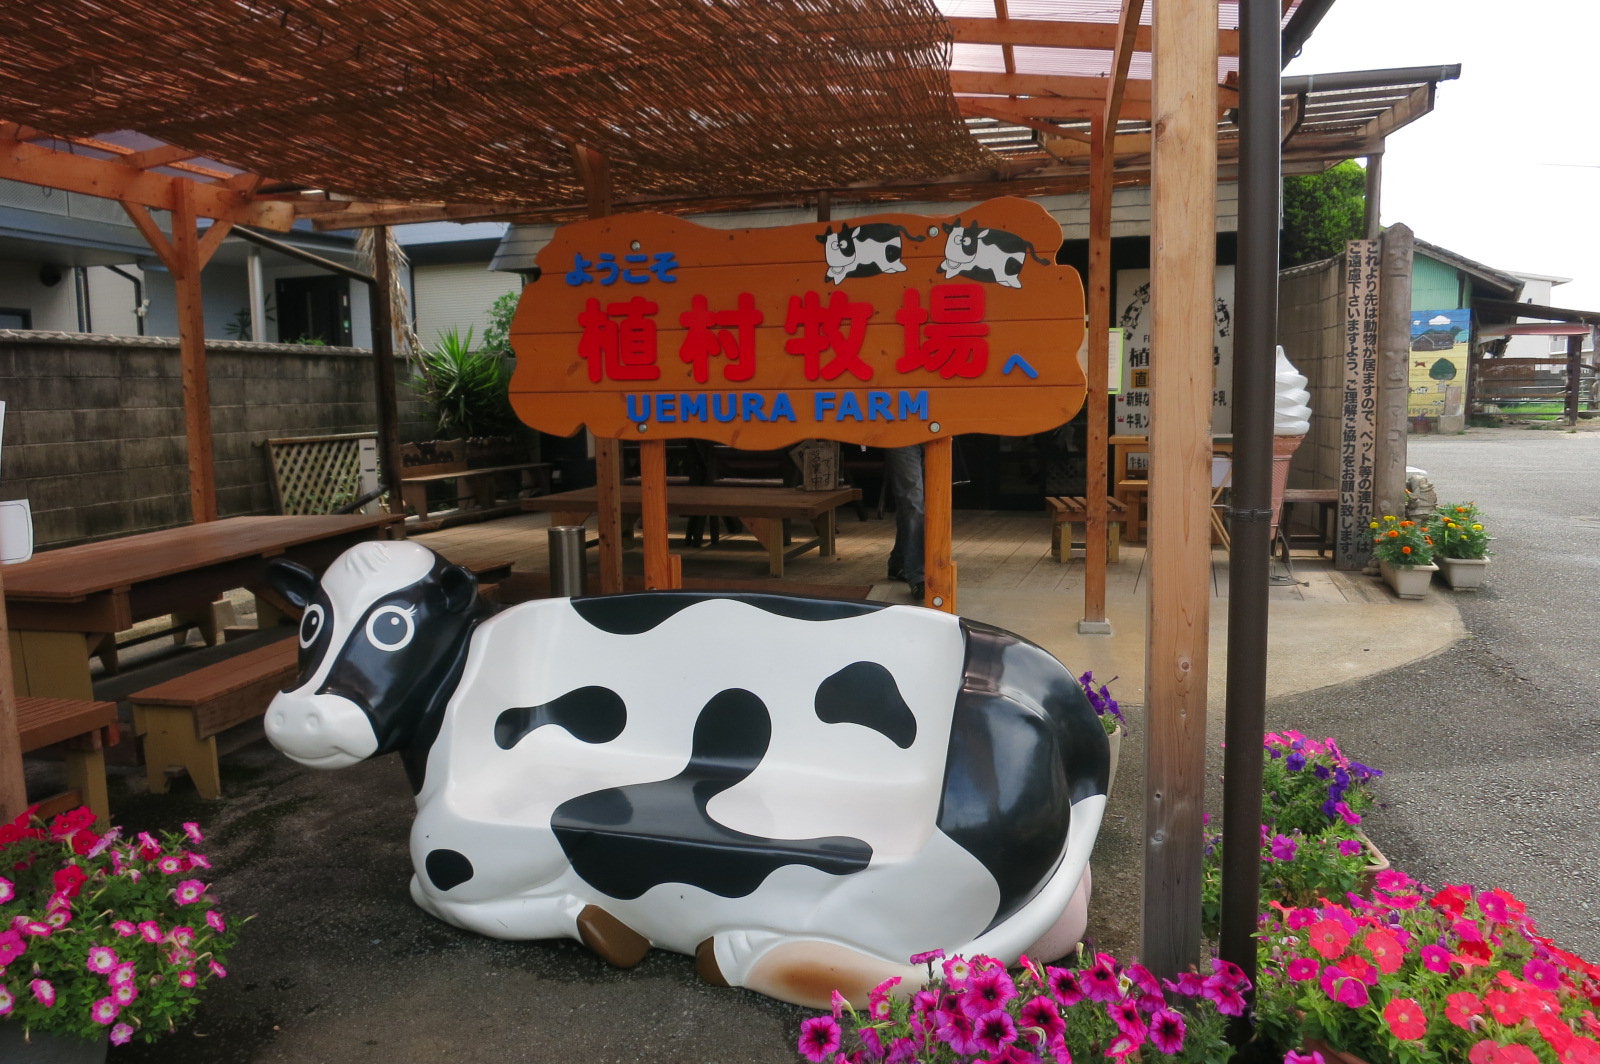 看板の手前の牛さんはベンチになっていて、記念撮影できます(^^)